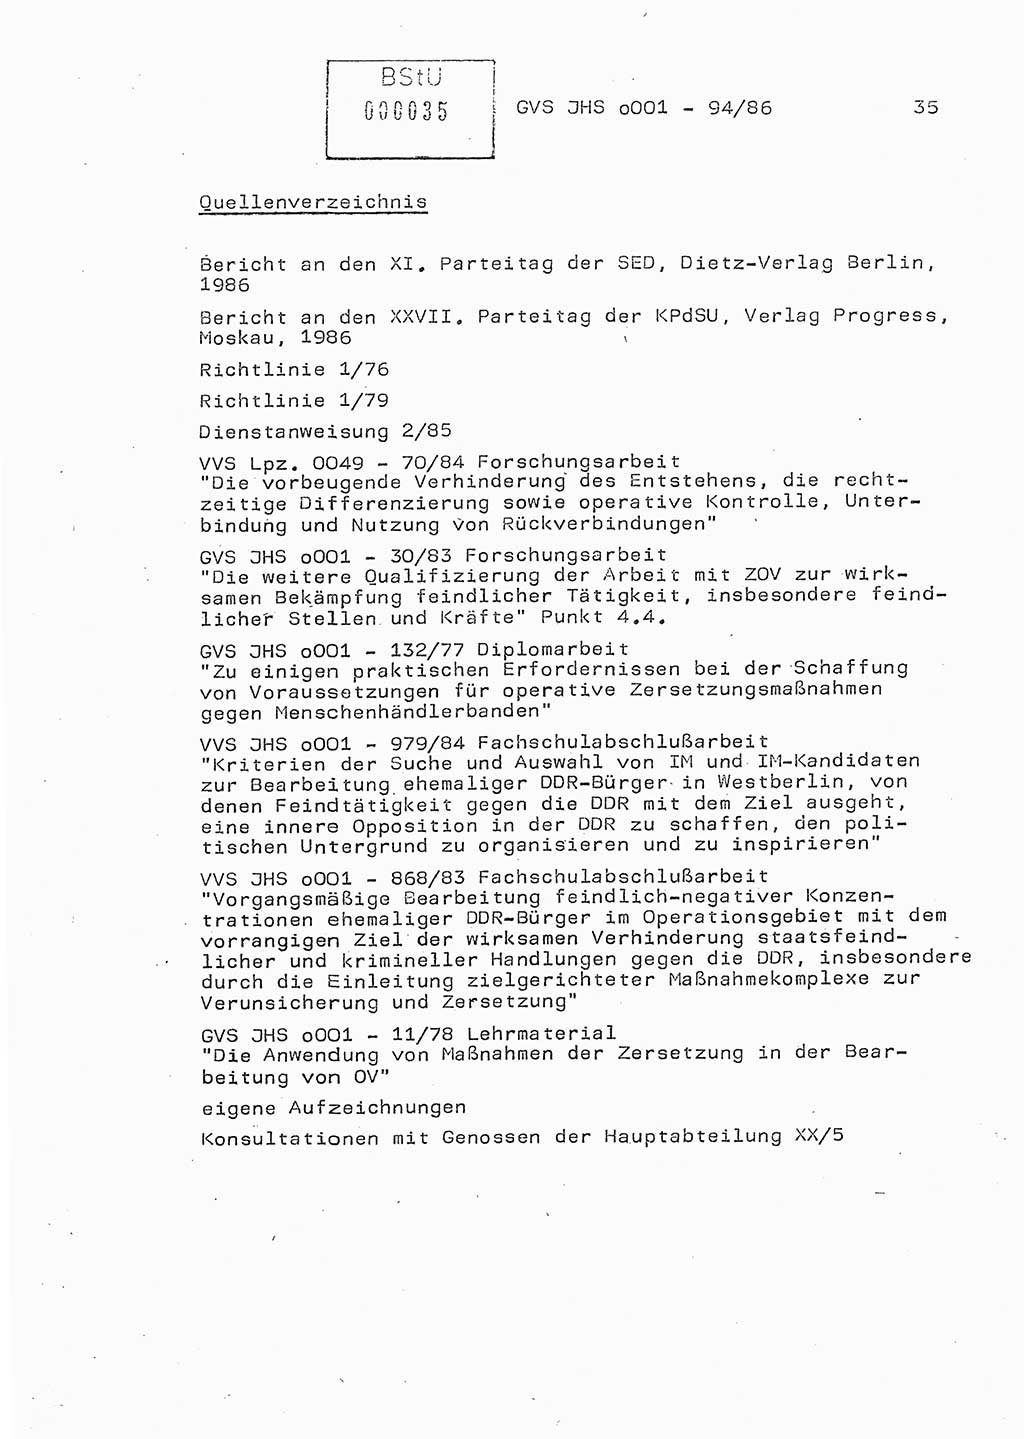 Diplomarbeit Oberleutnant Volkmar Pechmann (HA ⅩⅩ/5), Ministerium für Staatssicherheit (MfS) [Deutsche Demokratische Republik (DDR)], Juristische Hochschule (JHS), Geheime Verschlußsache (GVS) o001-94/86, Potsdam 1986, Blatt 35 (Dipl.-Arb. MfS DDR JHS GVS o001-94/86 1986, Bl. 35)